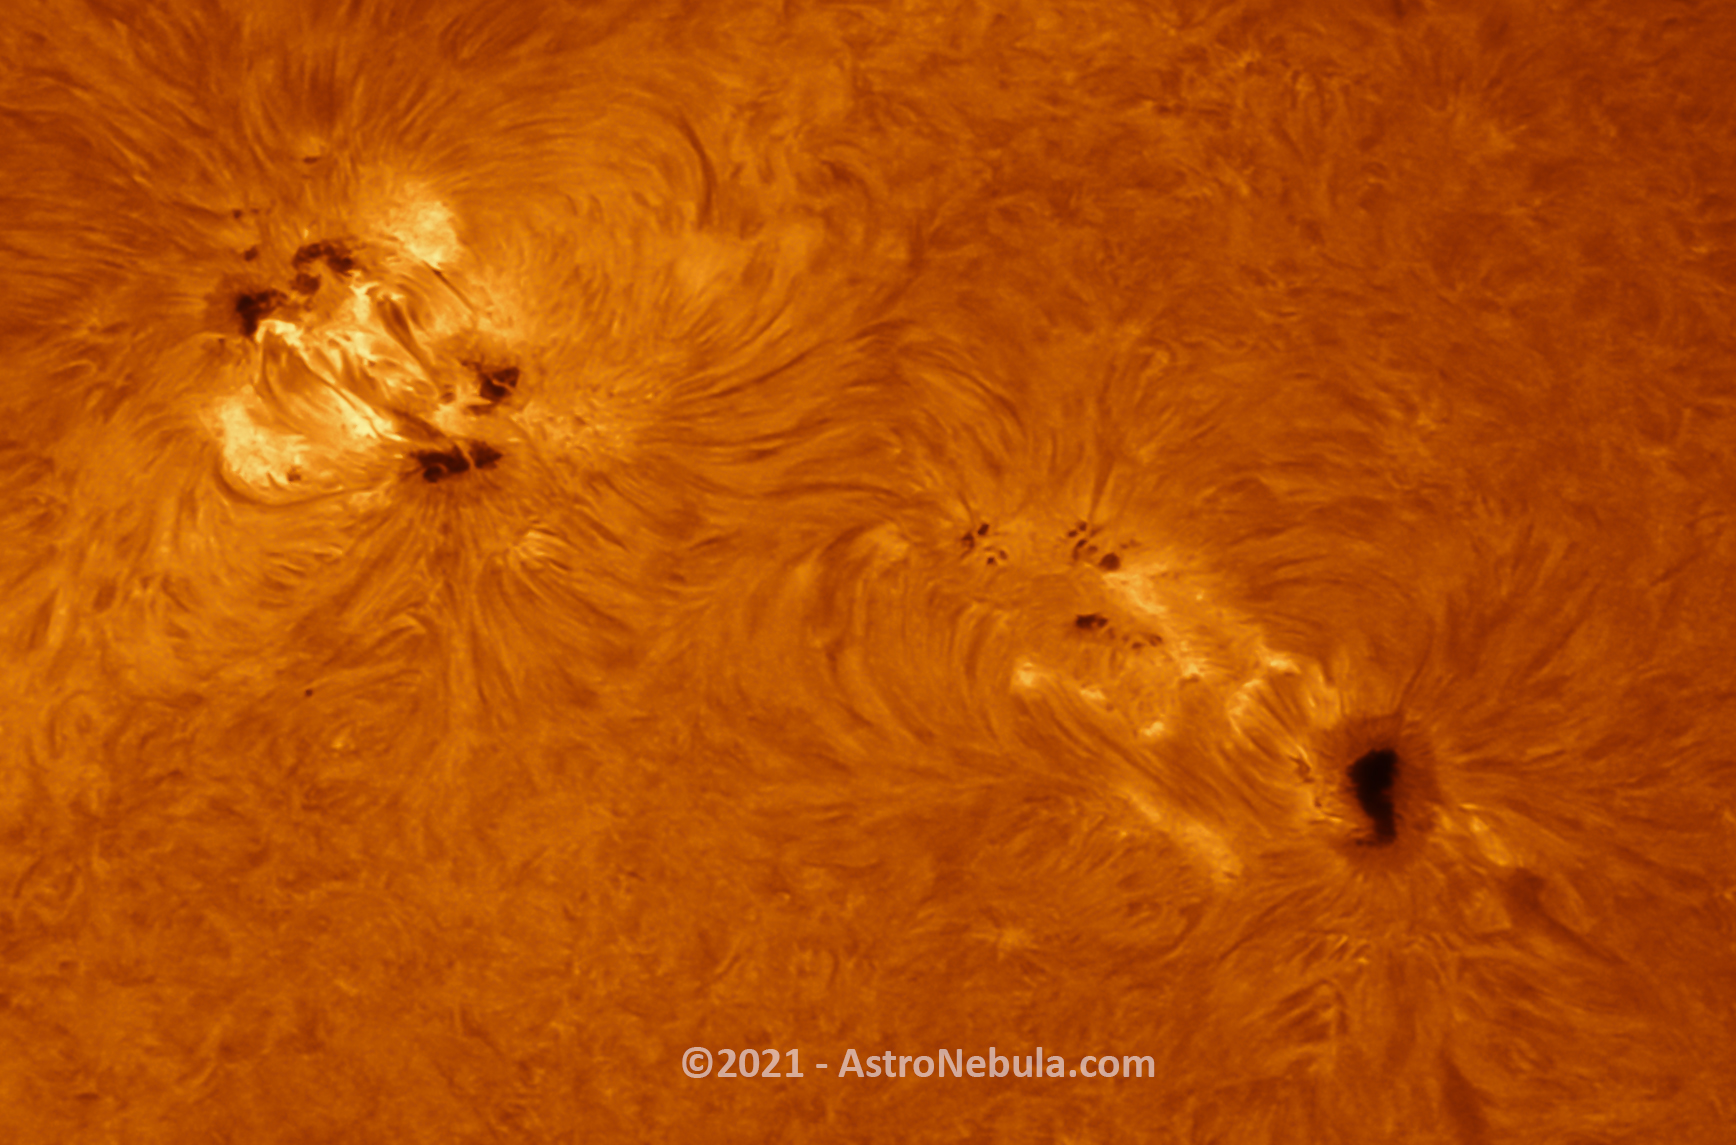 Sunspot AR 2866 and AR 2868